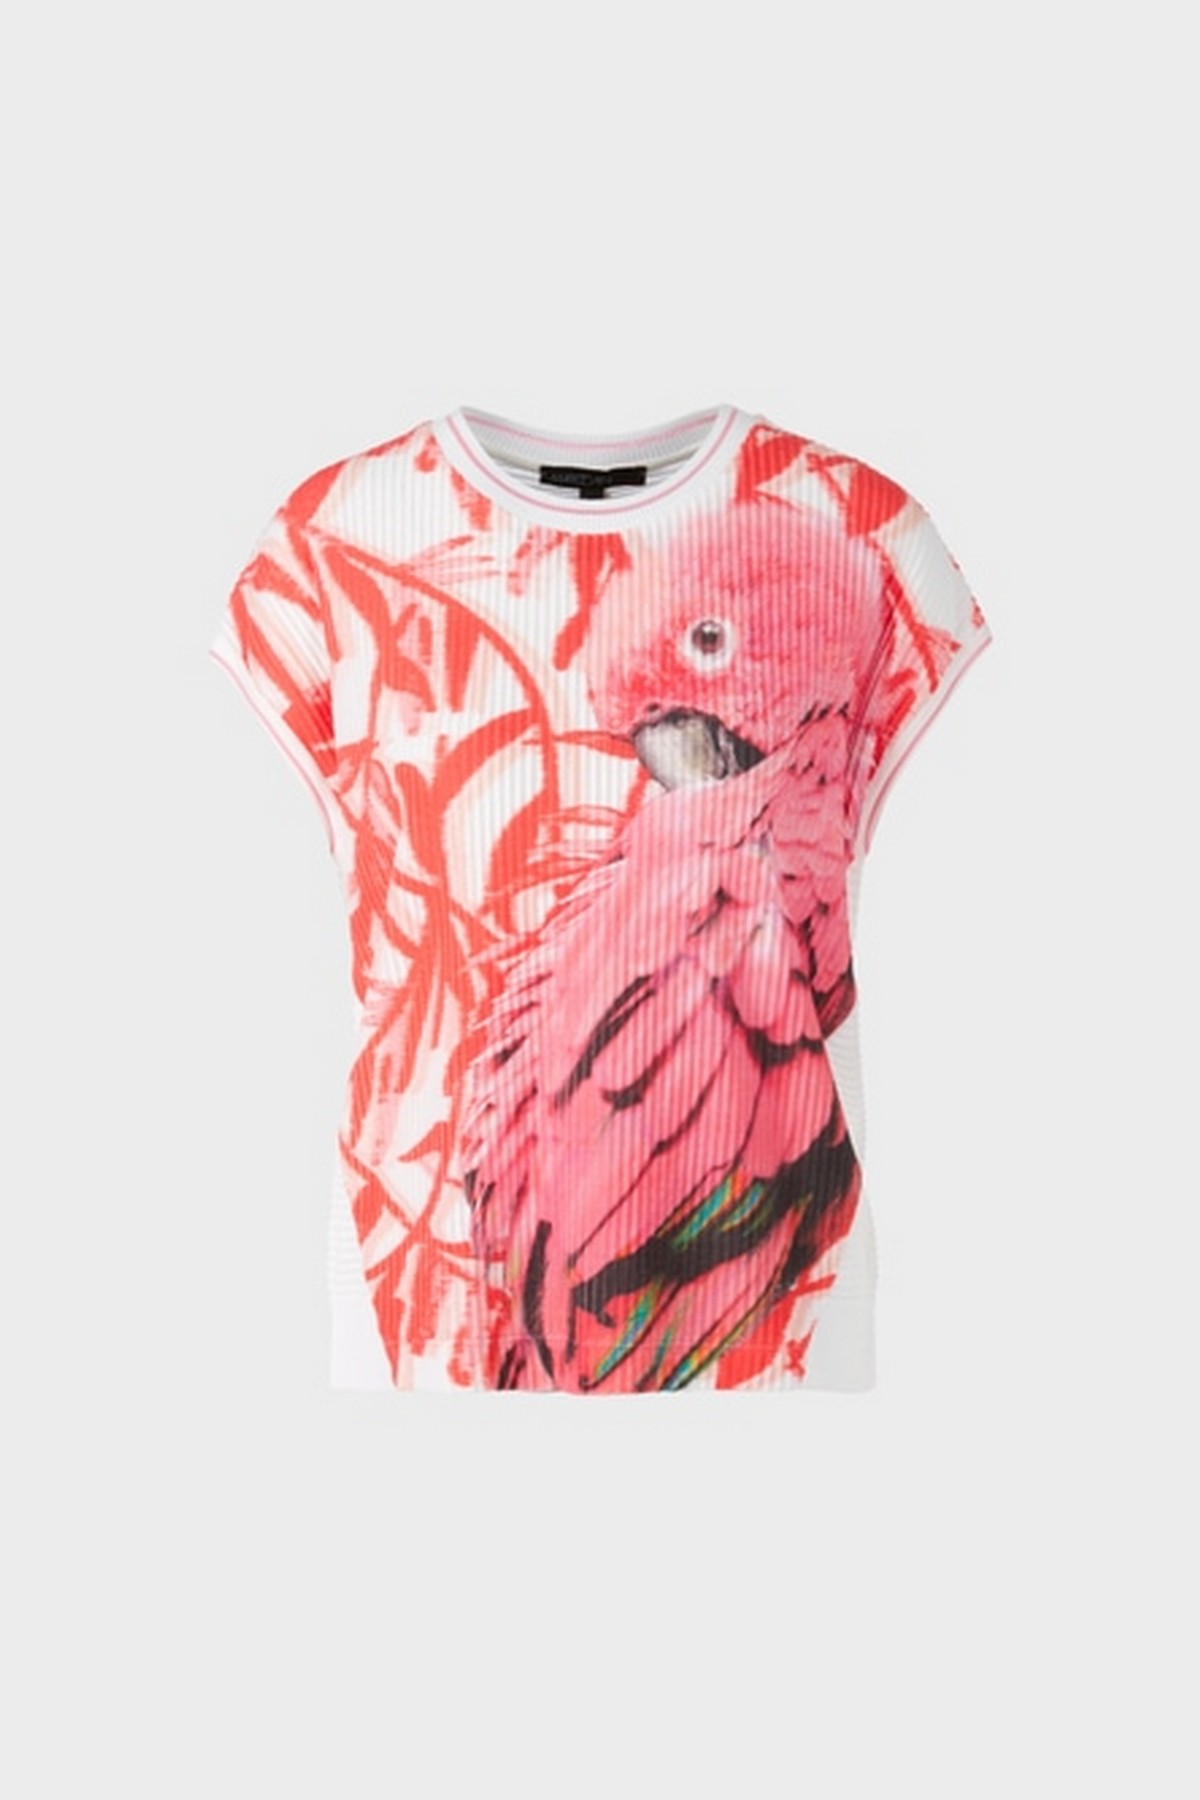 T-shirt los papegaai in de kleur wit roze oranje van het merk Marc Cain Collections